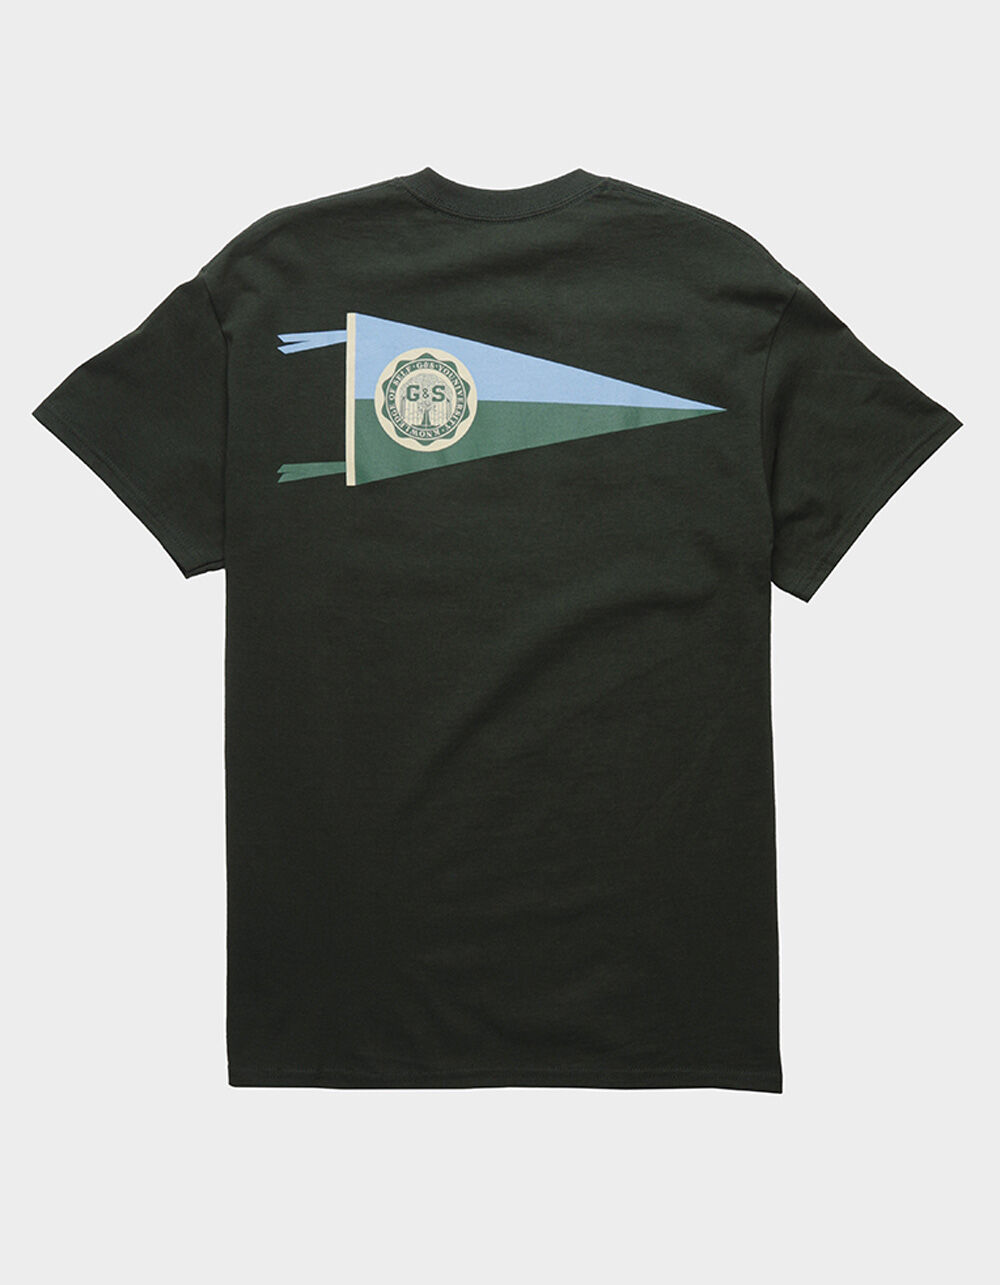 GARDENS & SEEDS Youniversity Seal Mens Dark Green T-Shirt - DKGRN | Tillys